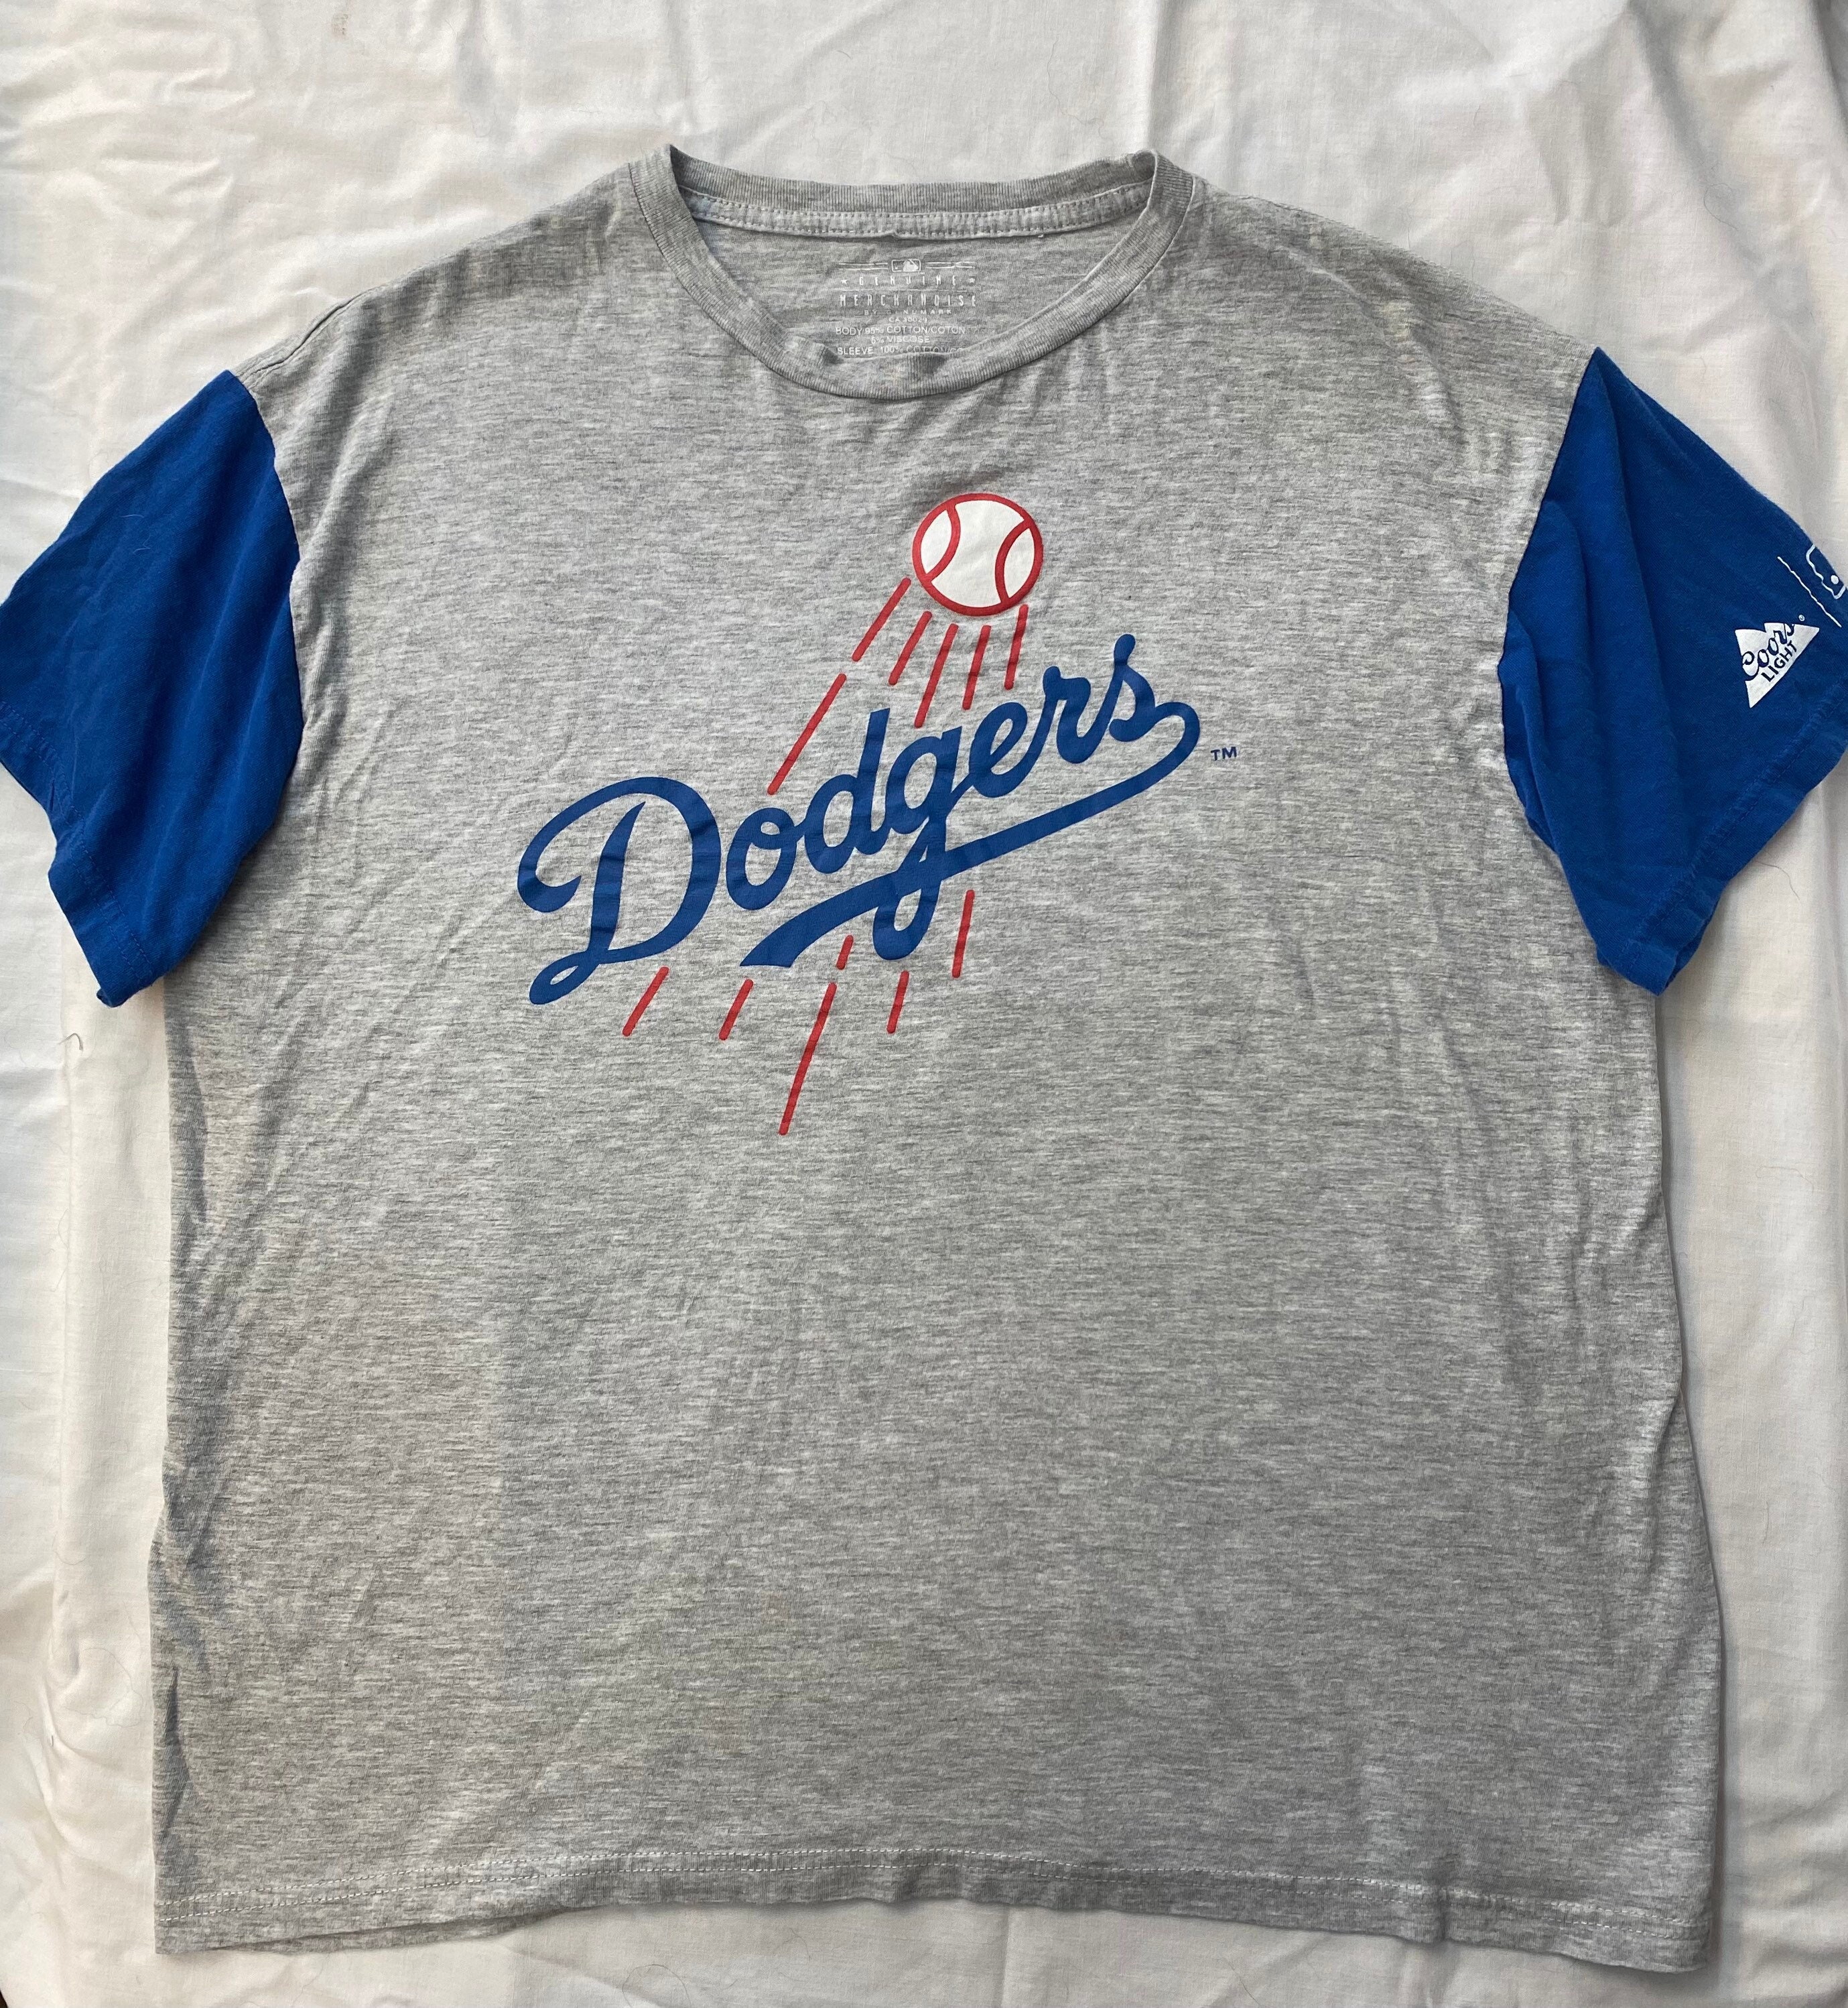 Los Angeles Dodgers Gonzalez Majestic Blue T-Shirt Mens Sz XL Good